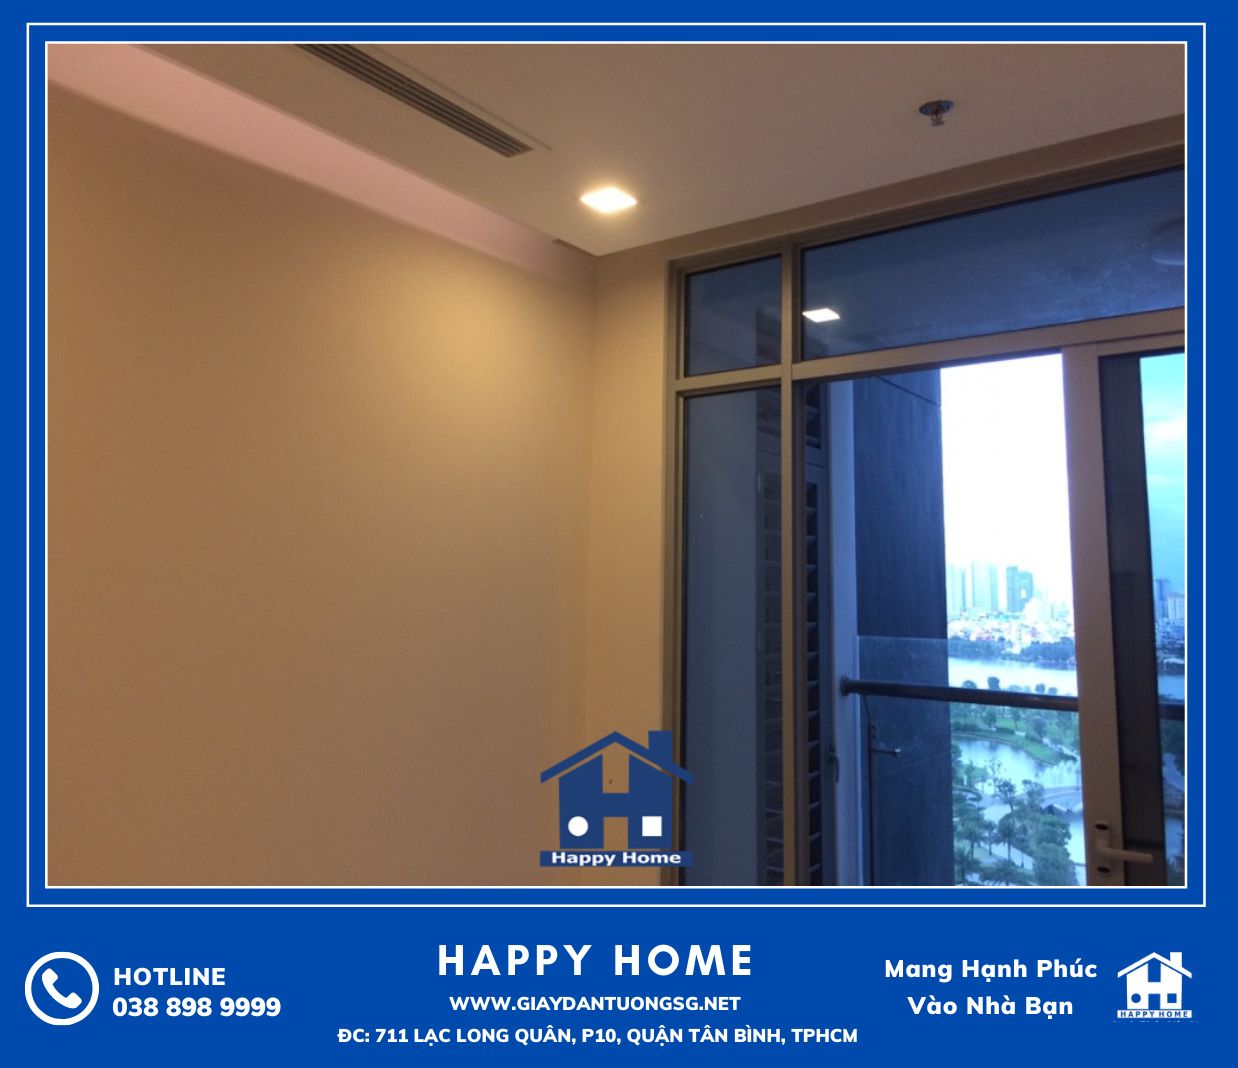 Happy Home Chuyên thi công giấy dán tường chung cư uy tín, giá rẻ!